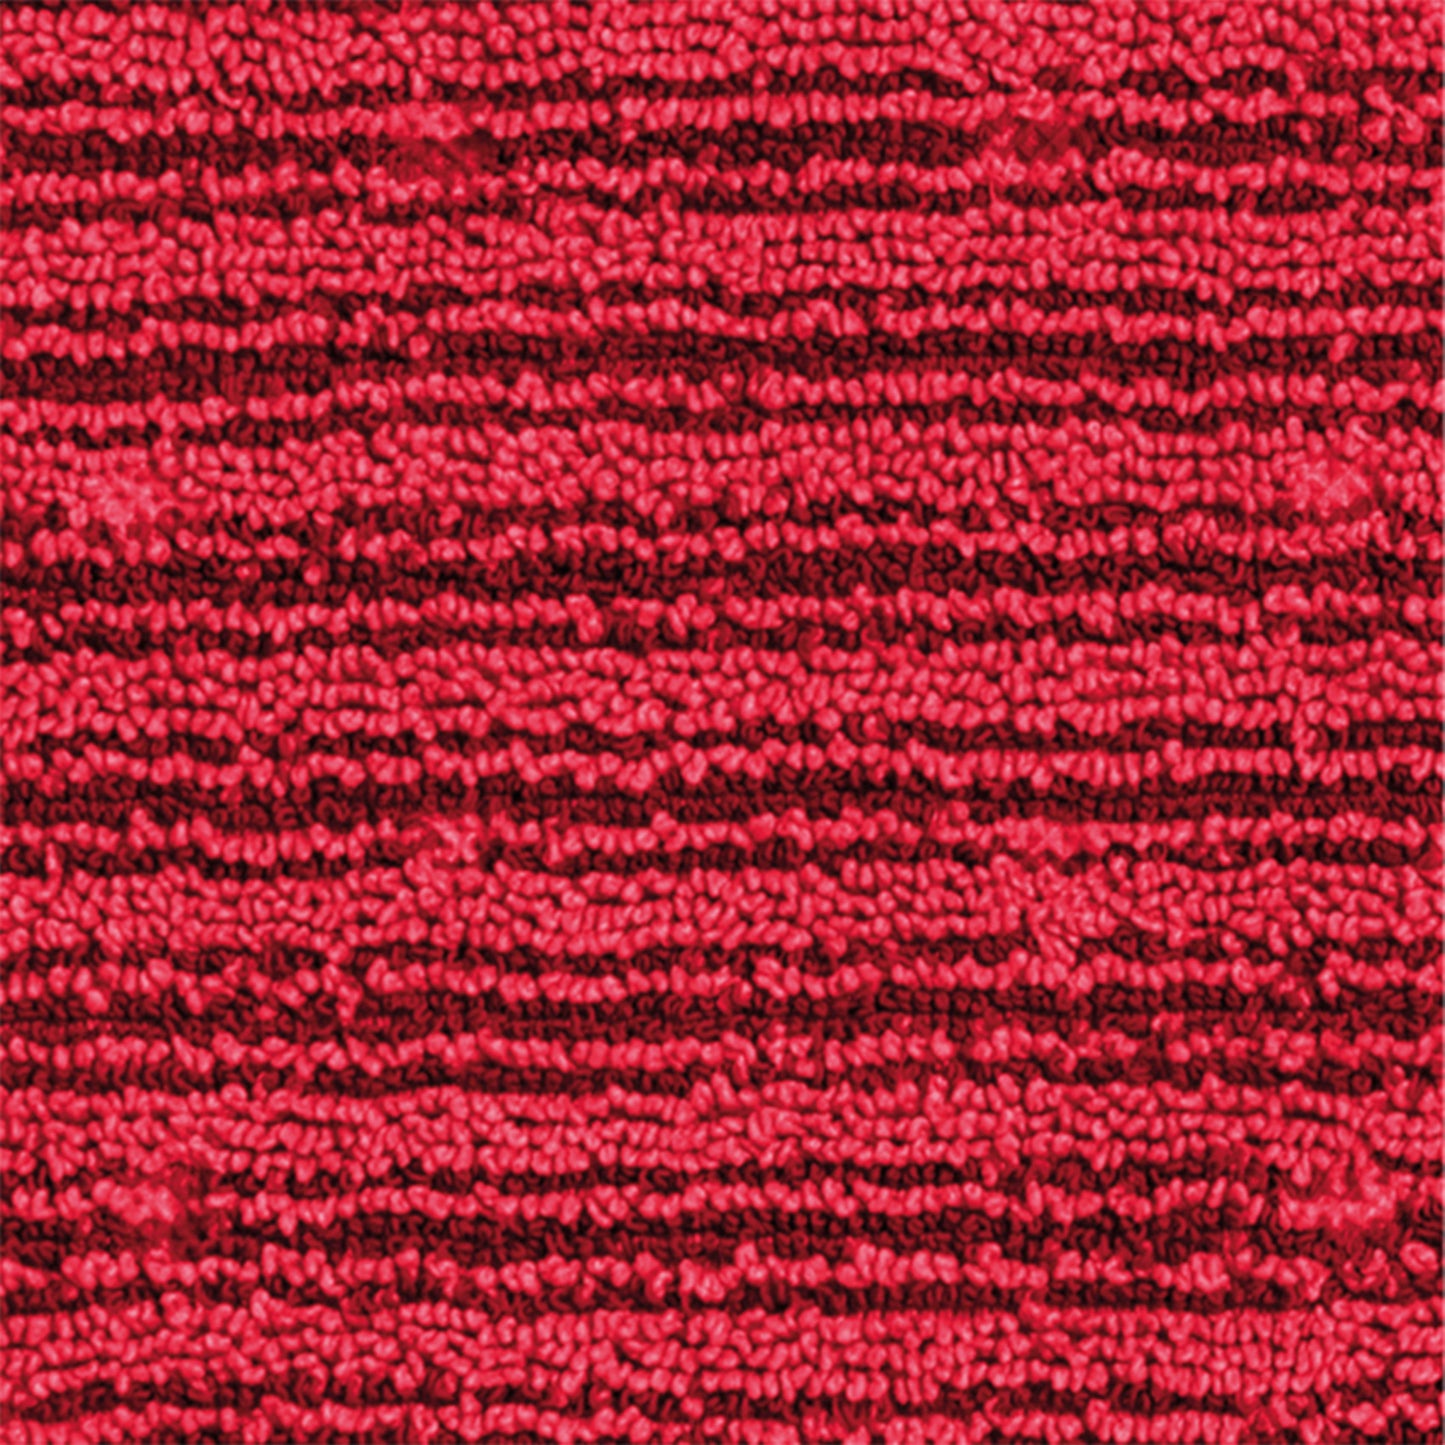 Mopa microfibra vermelha TRISAFE para TRILOGY S, plana com dupla face adequada para lavagem de superfícies porosas ou antiderrapantes, removendo sujidade entranhada. Sistema ideal para para ser usado com pré-embebição, estação de imersão ou com o espremedor conveniente.